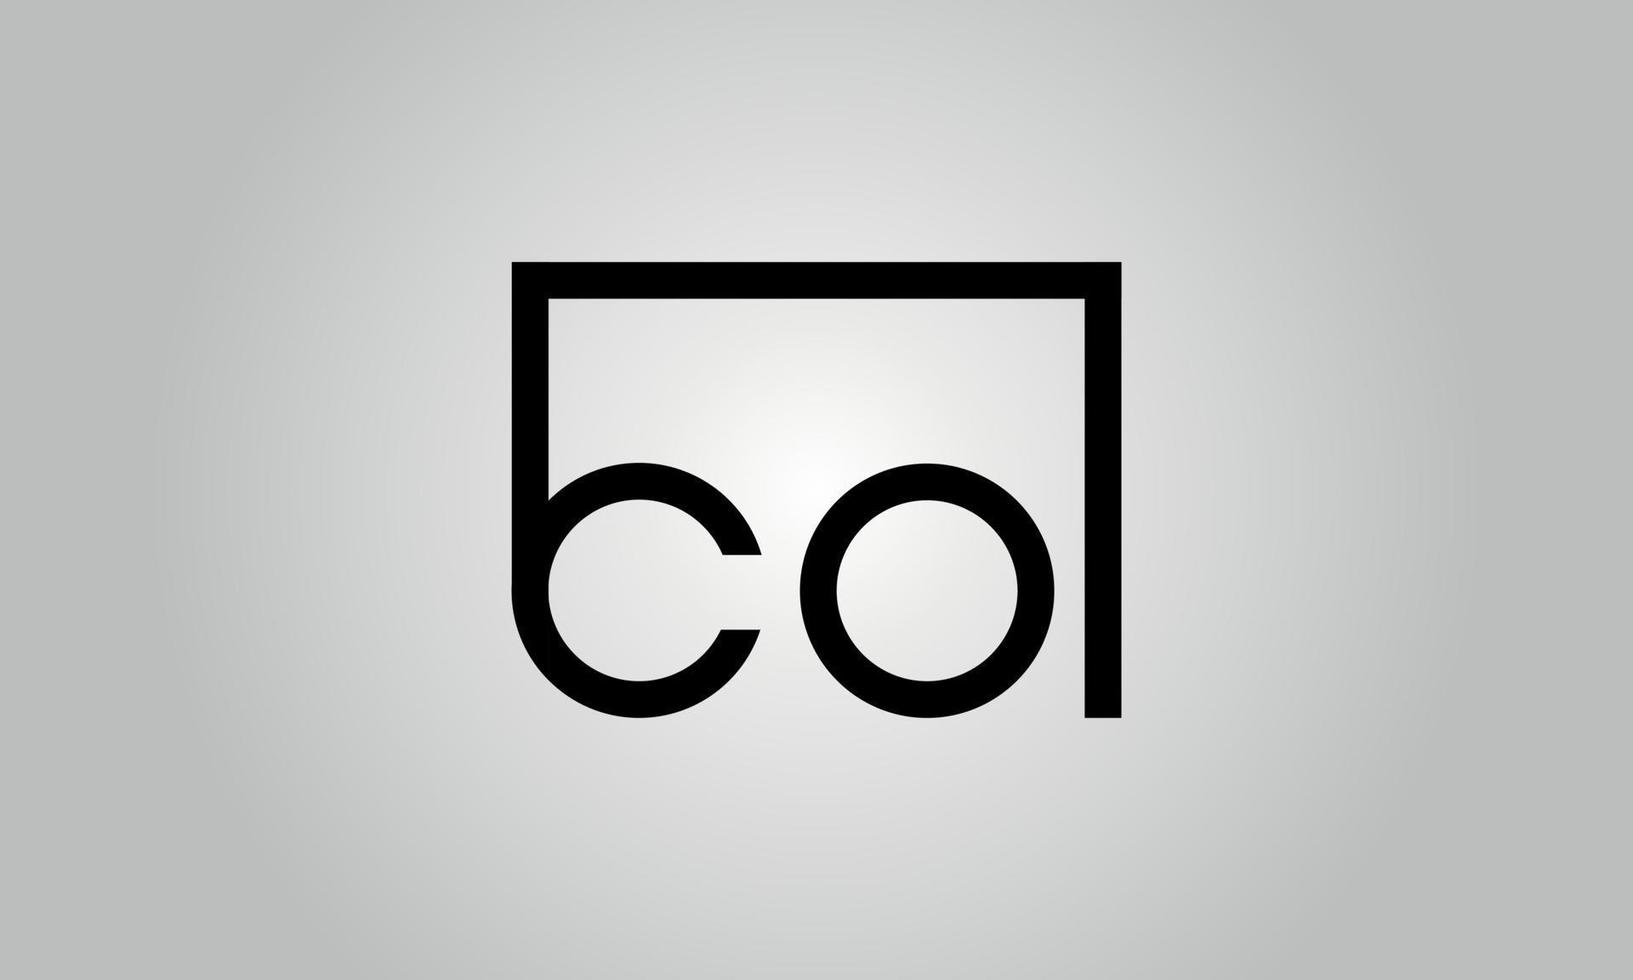 création de logo lettre co. co logo avec forme carrée dans le modèle de vecteur libre de vecteur de couleurs noires.